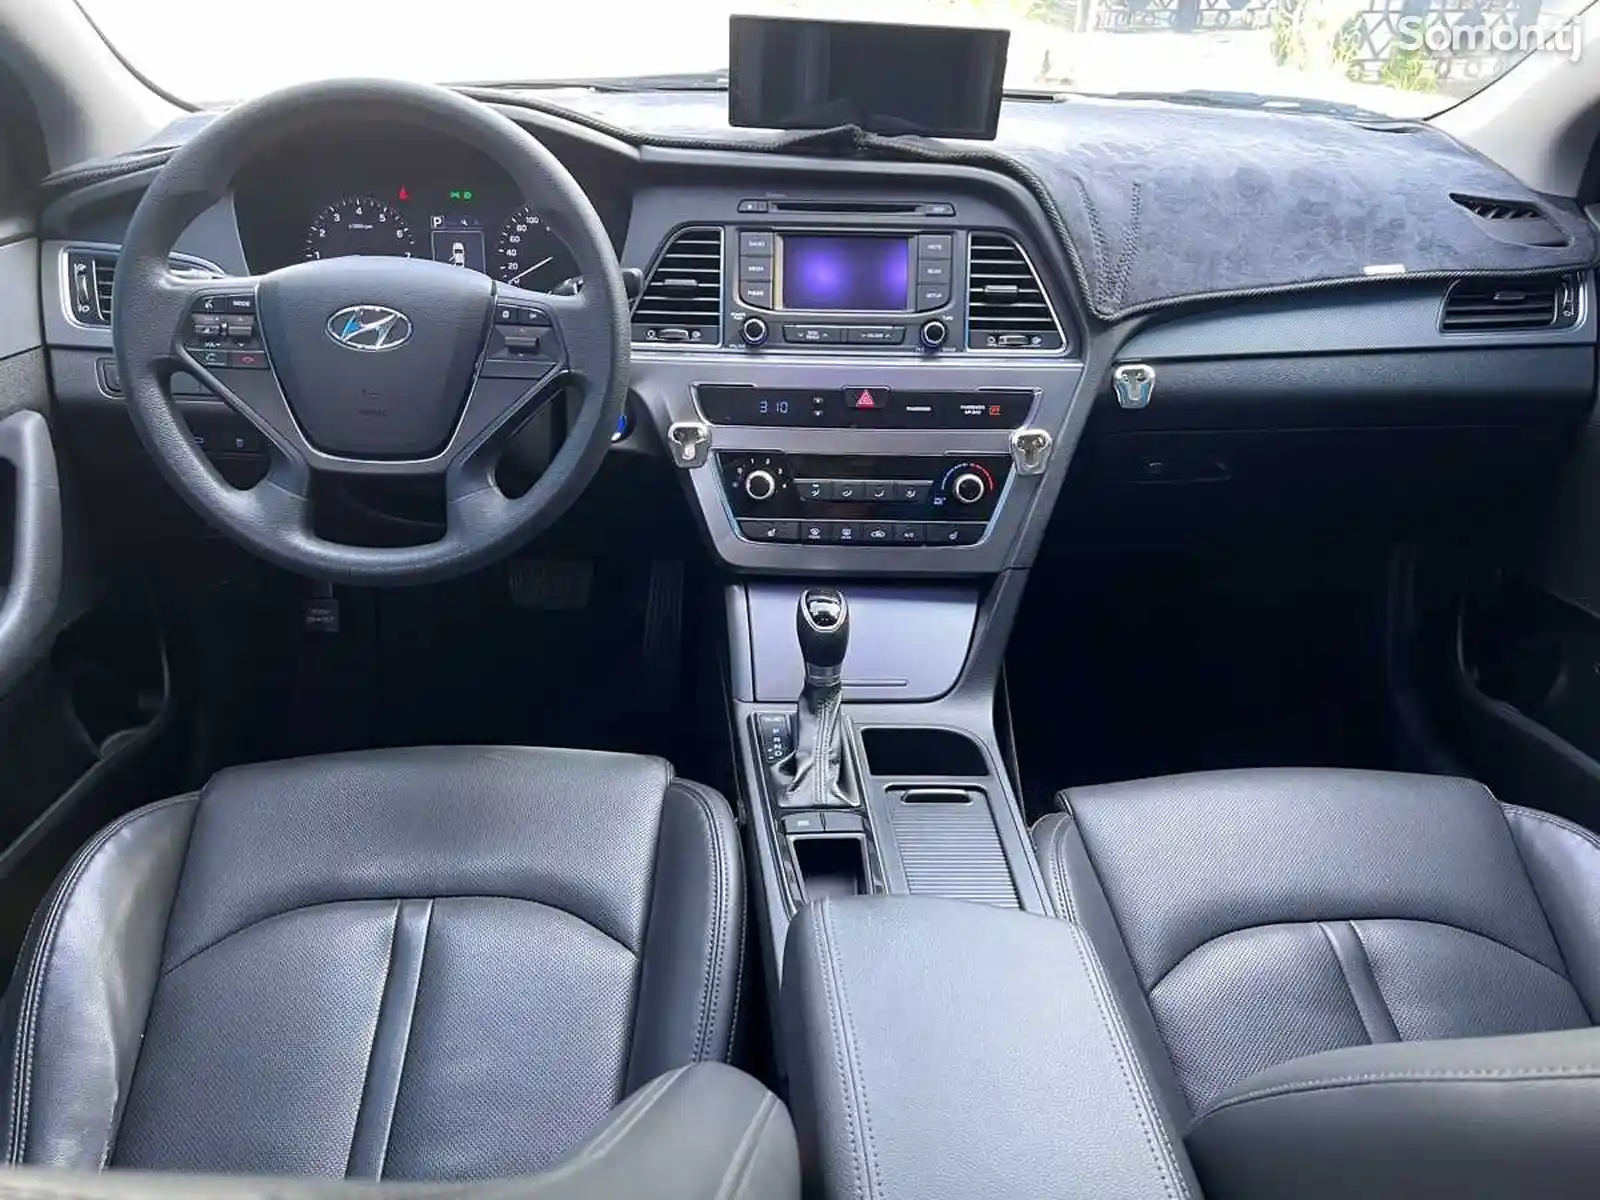 Hyundai Sonata, 2017-6